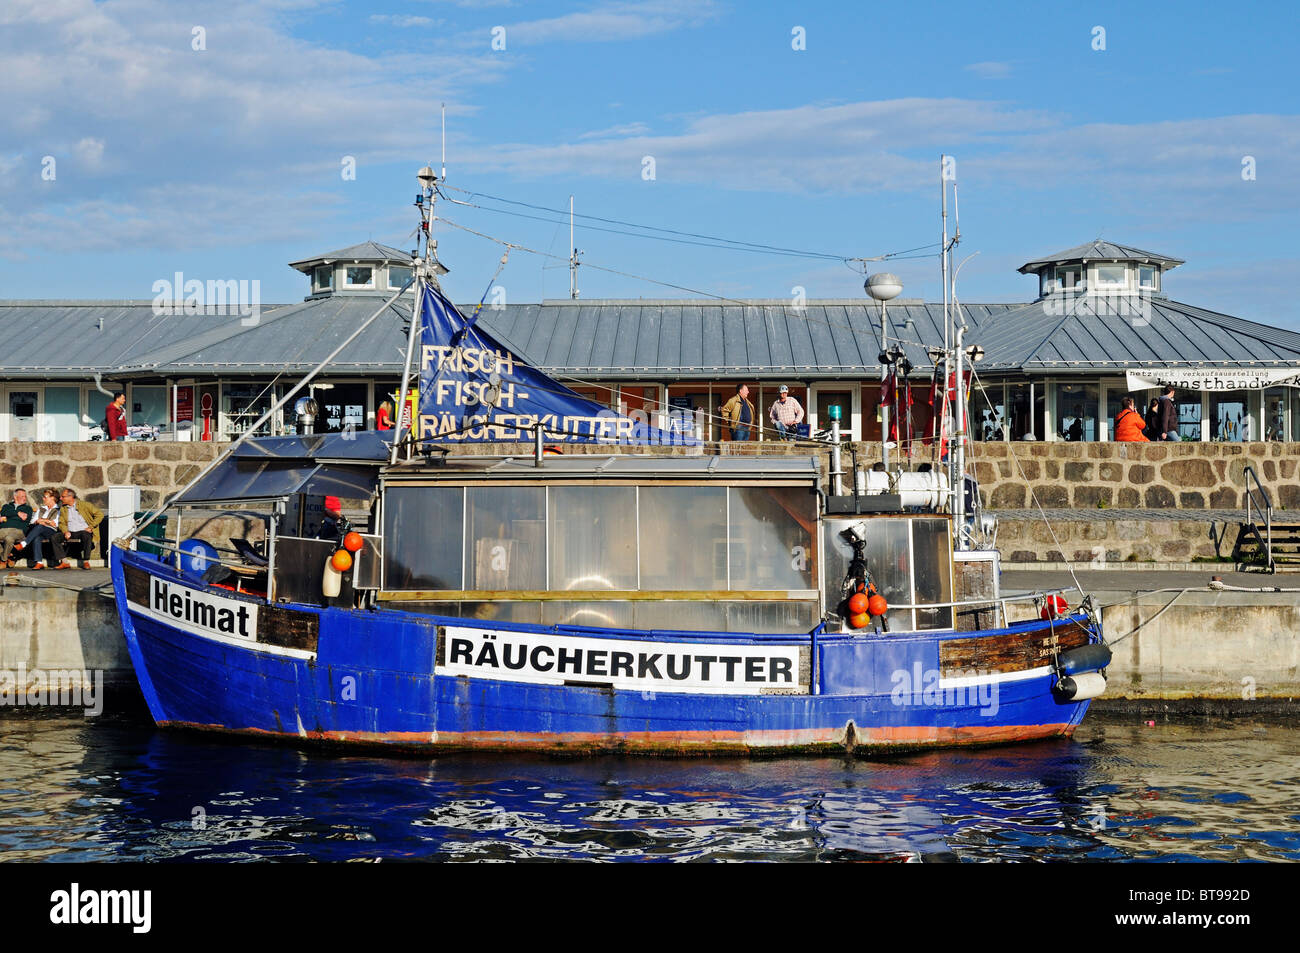 Verkauf von frischem und geräuchertem Fisch auf dem Rauchen Cutter in der Ostsee resort Sassnitz, Halbinsel Jasmund, Insel Rügen Stockfoto